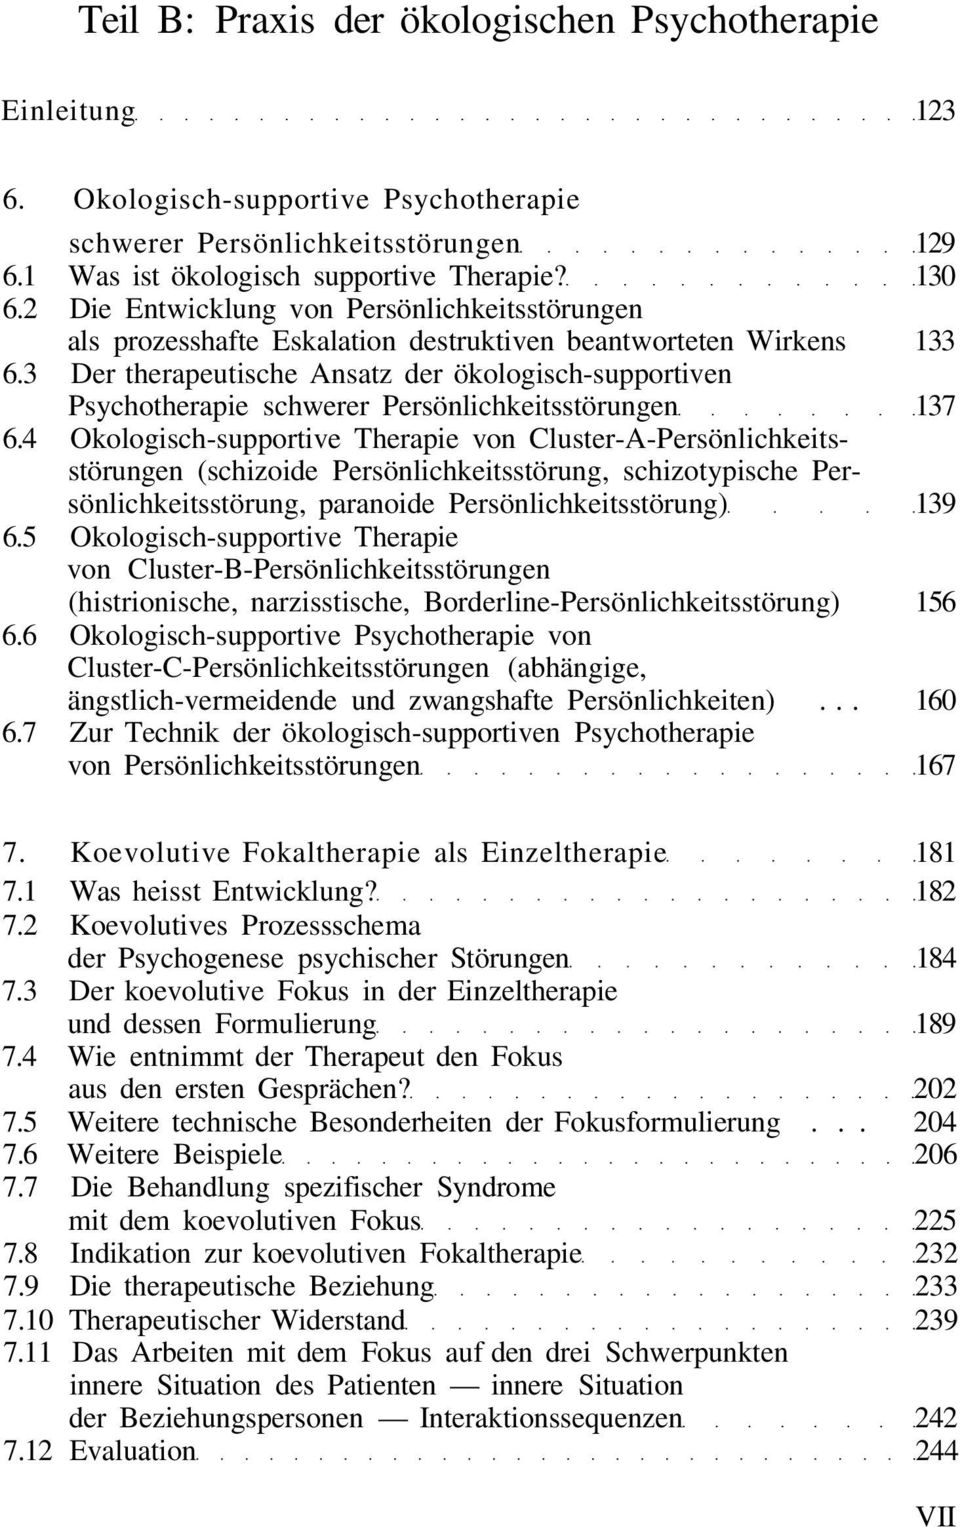 3 Der therapeutische Ansatz der ökologisch-supportiven Psychotherapie schwerer Persönlichkeitsstörungen 137 6.